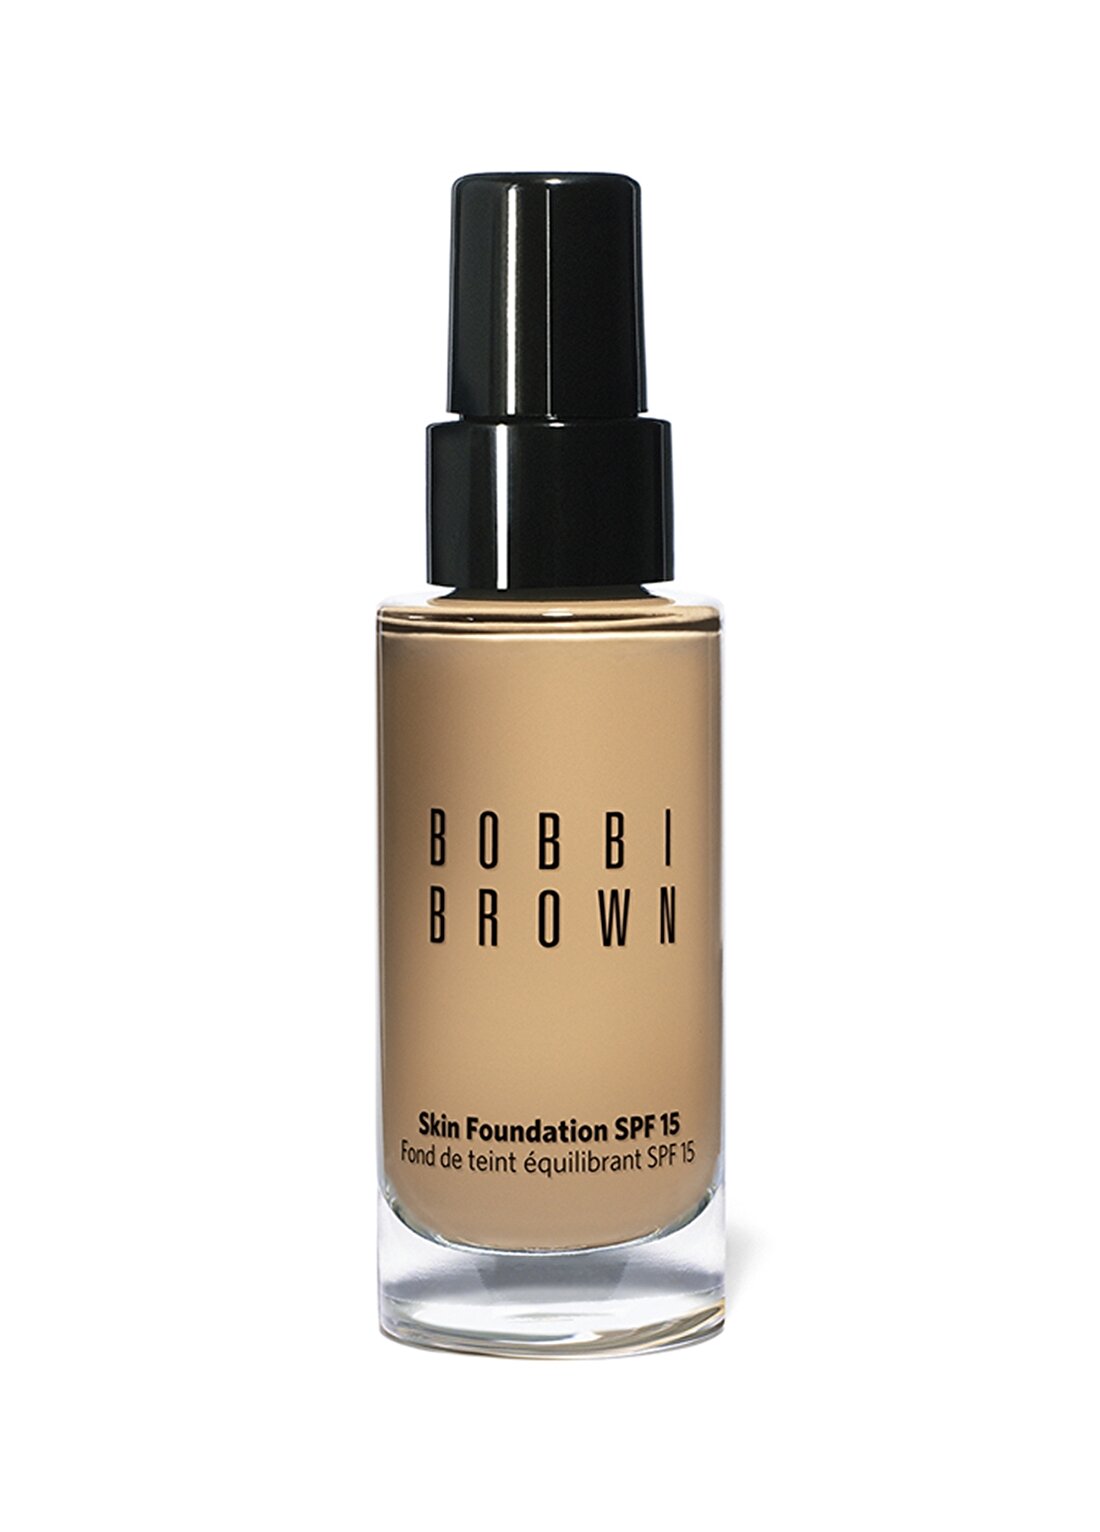 Bobbi Brown Skin Foundation Spf15 - Warm Sand (2.5) Fondöten